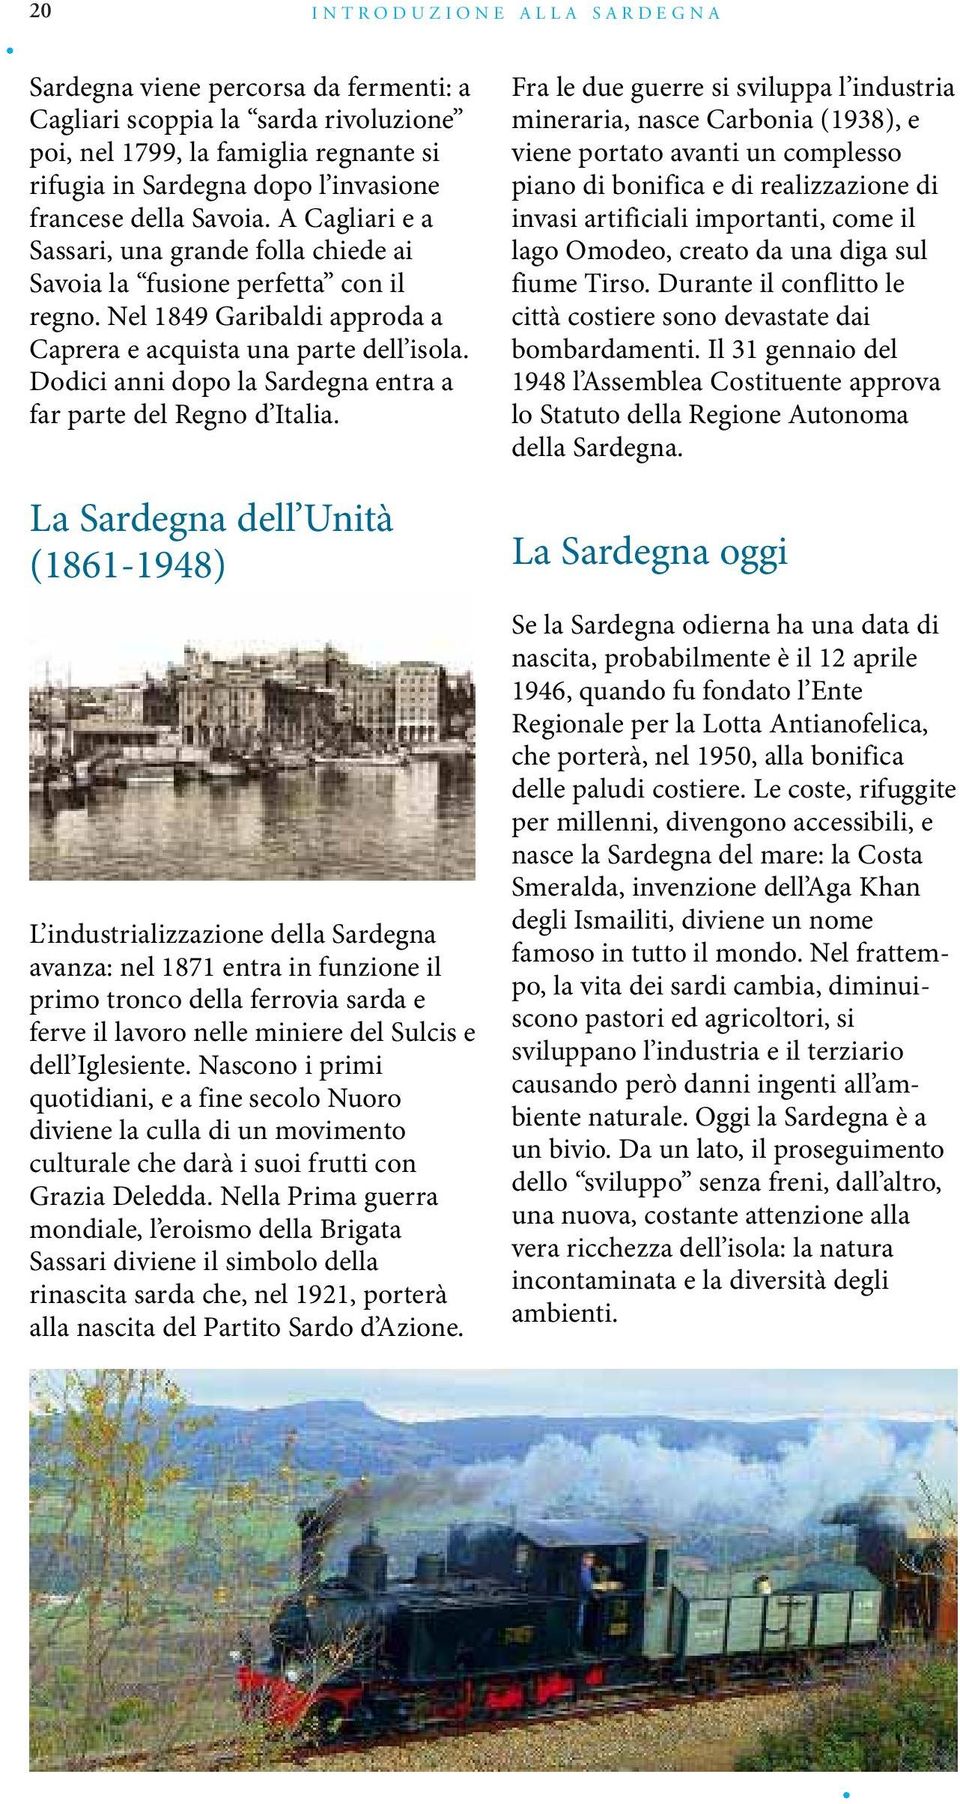 Dodici anni dopo la Sardegna entra a far parte del Regno d Italia.